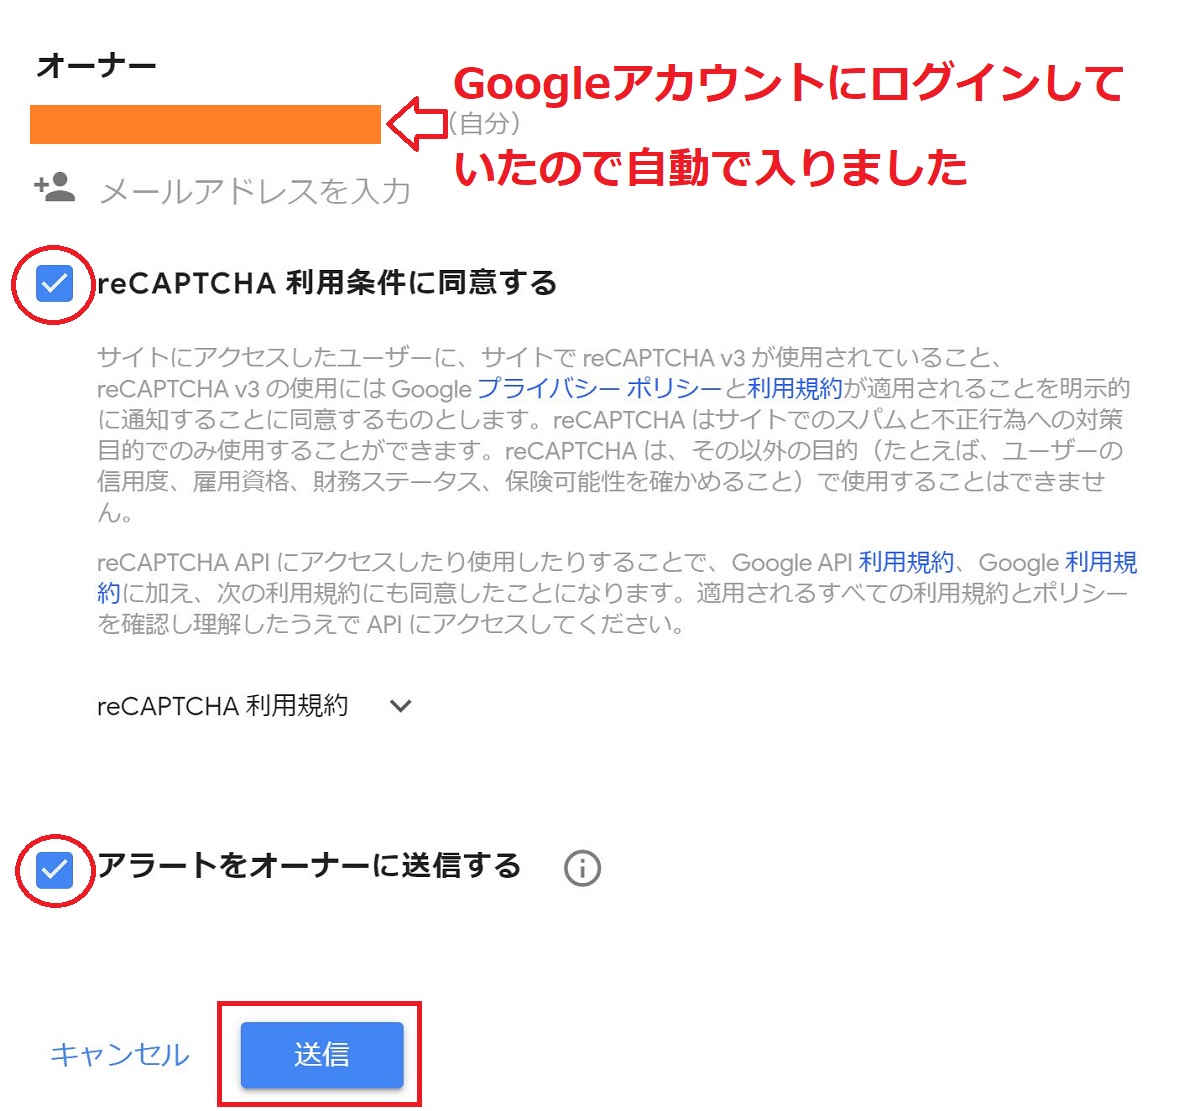 Google-reCAPTCHA-register-2